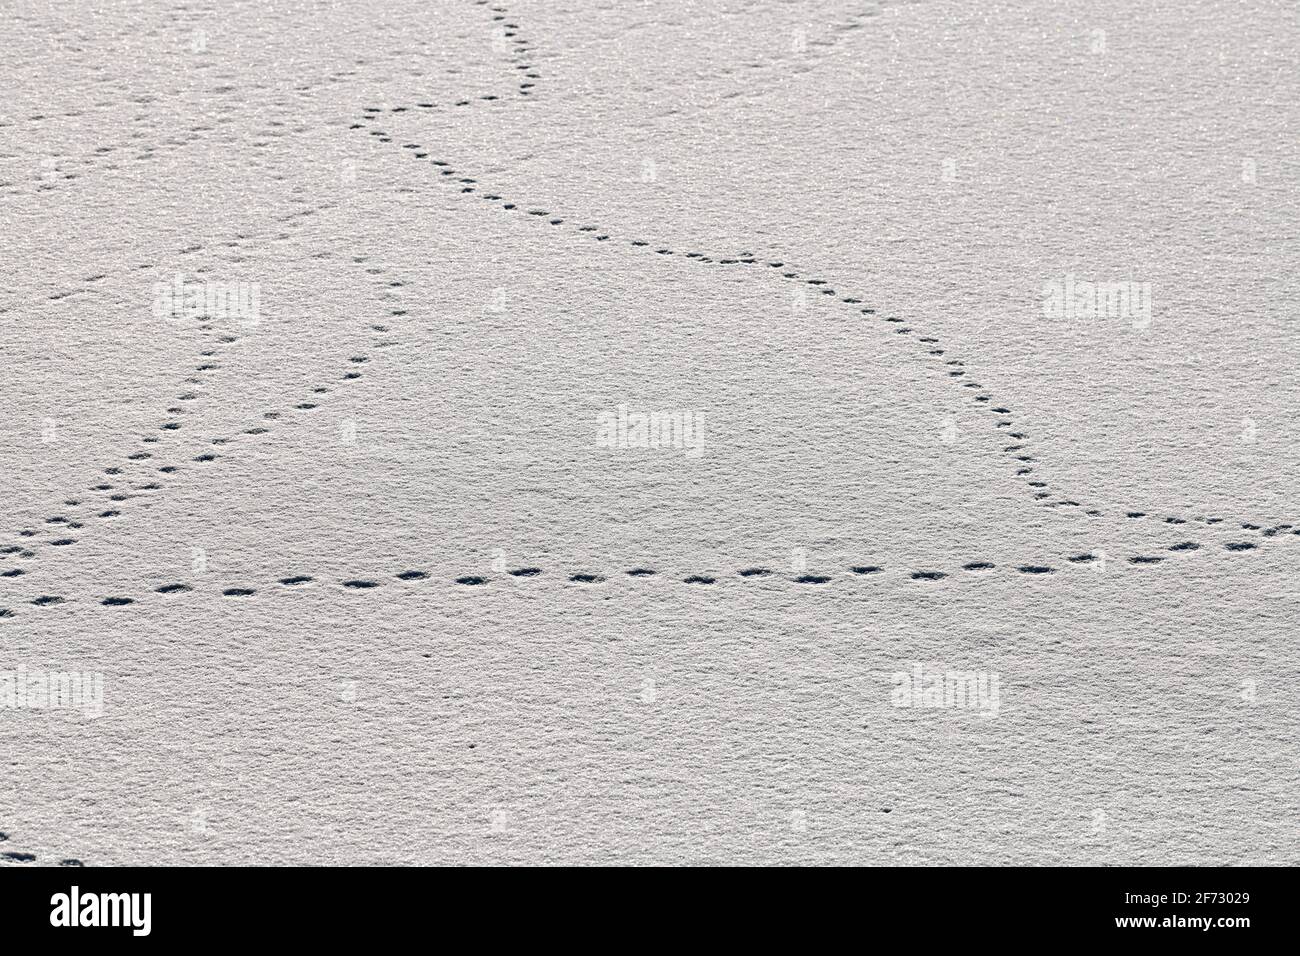 Fußabdrücke von Vögeln und Spuren von Vögeln auf weißem Schnee, Nahaufnahme. Winterhintergrund. Stockfoto